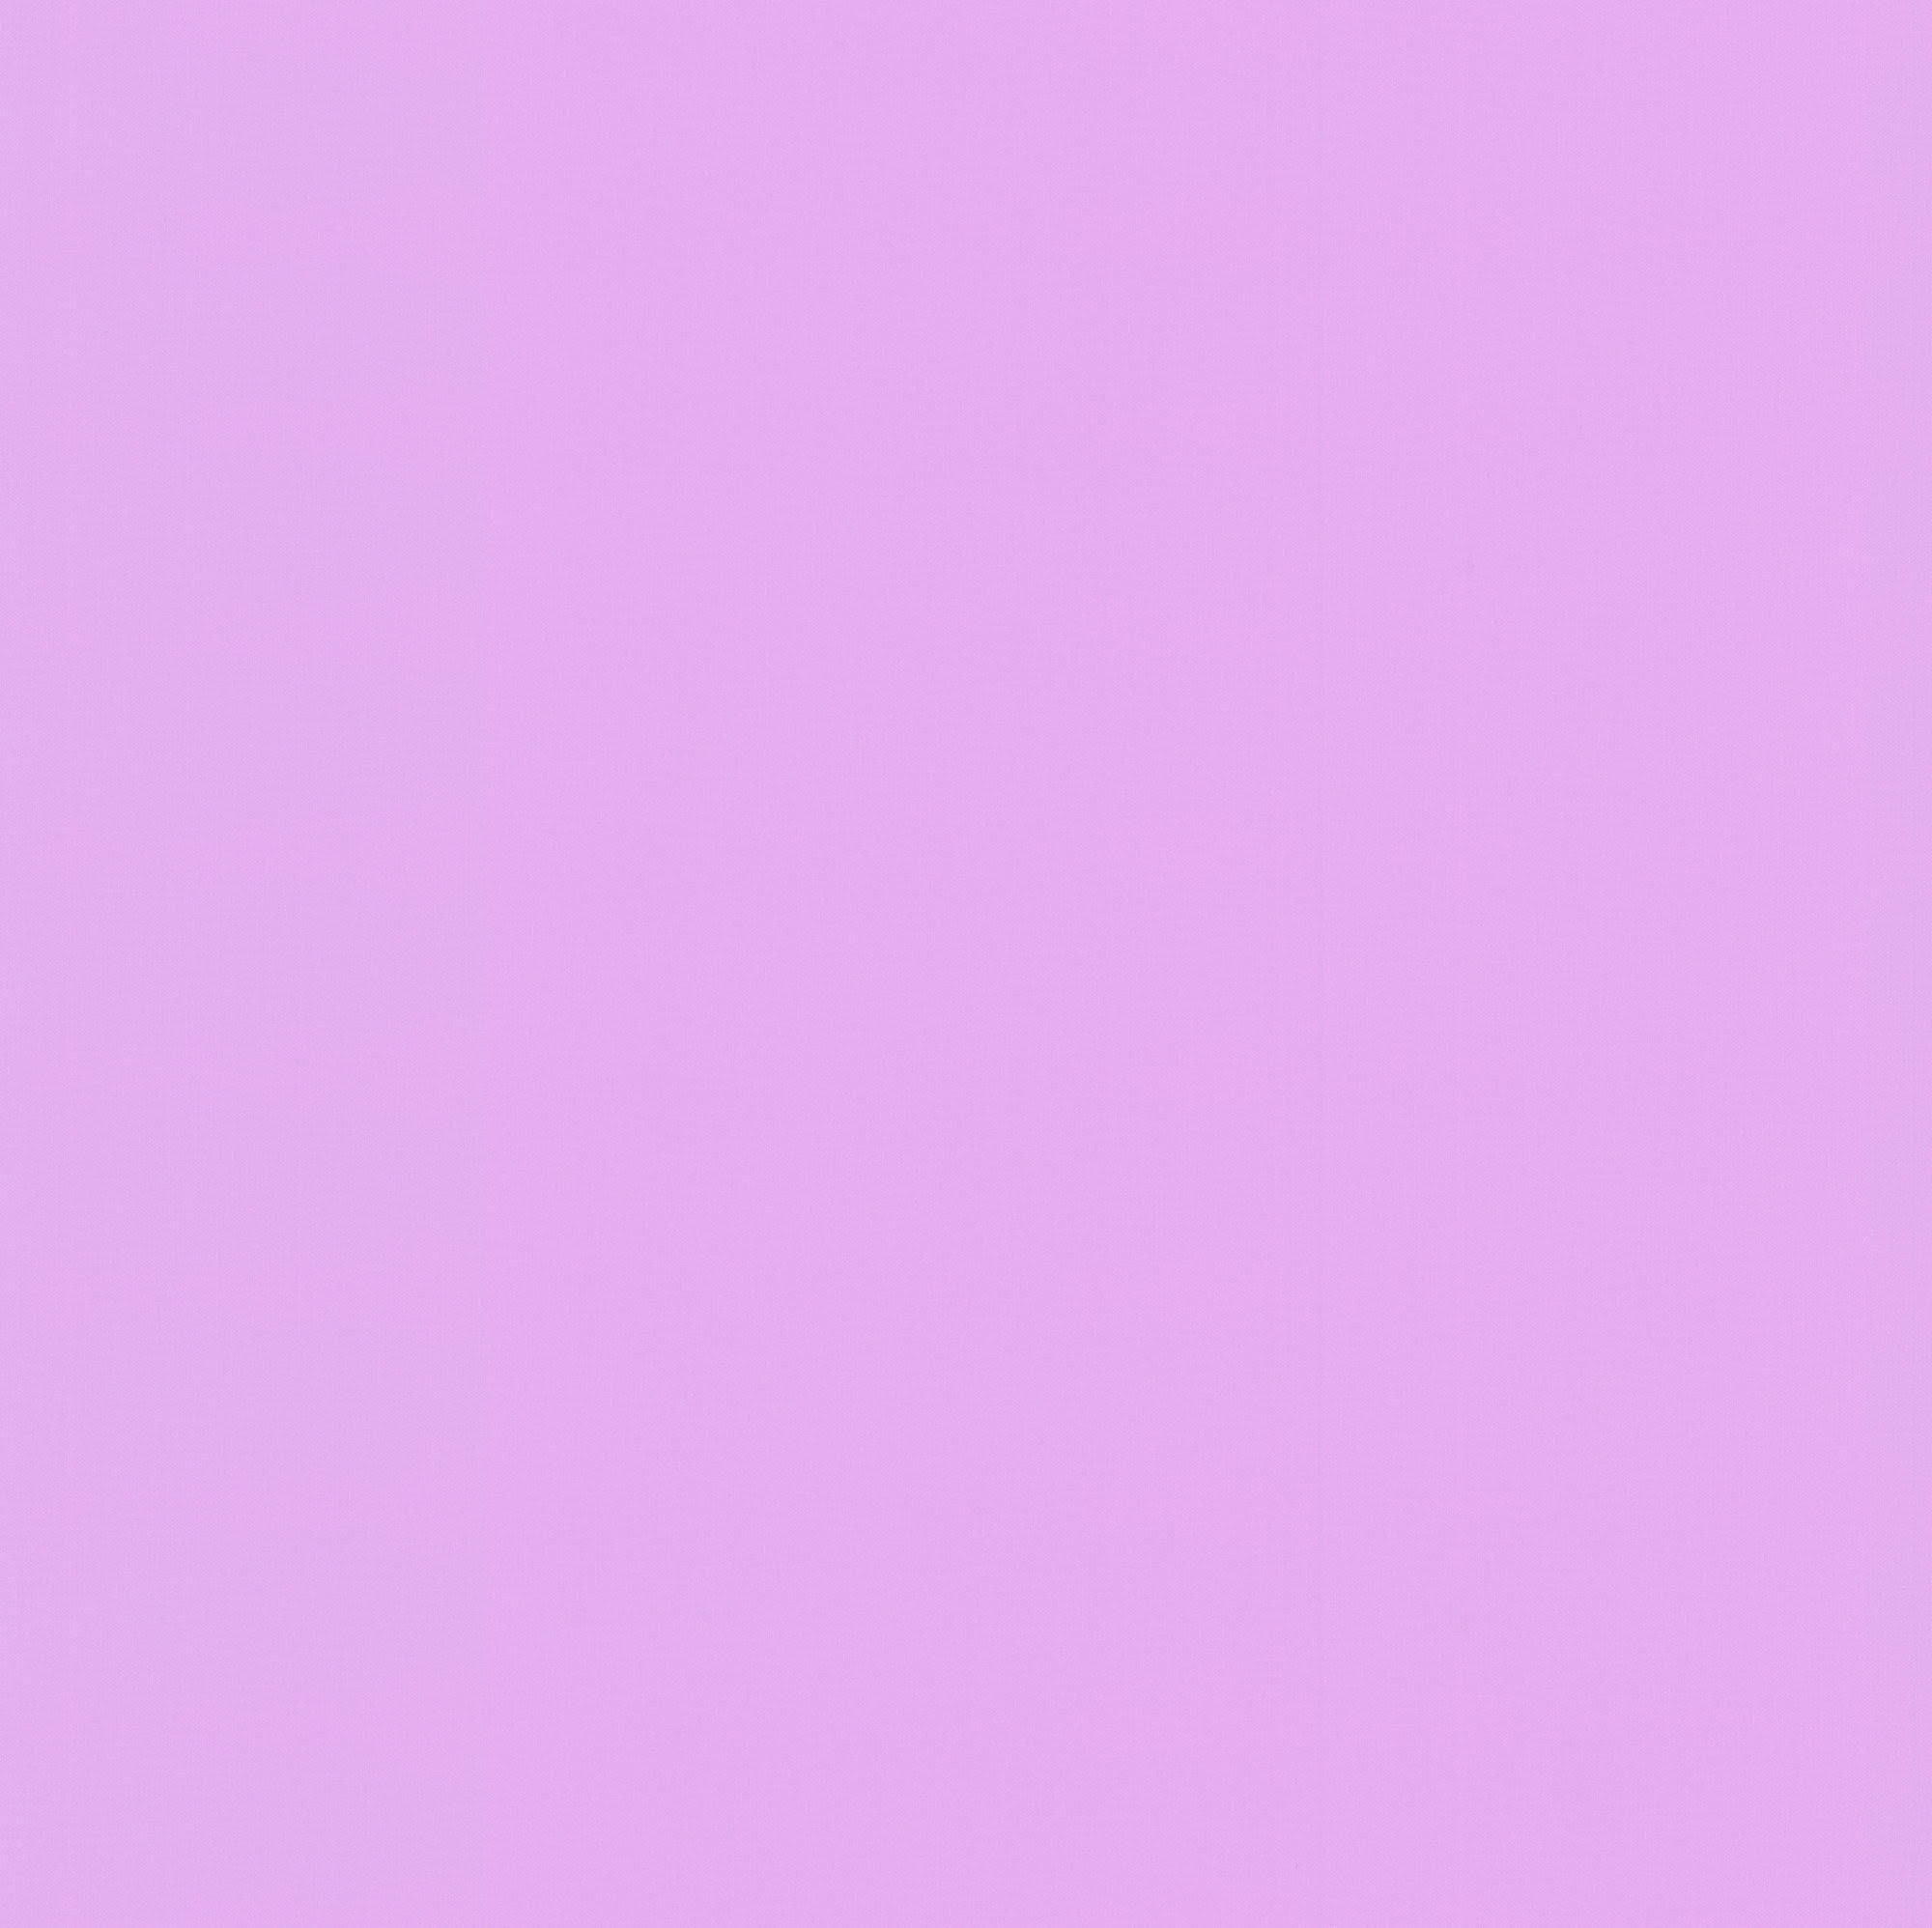 Plain Wallpaper for Desktop Purple (58+ images)